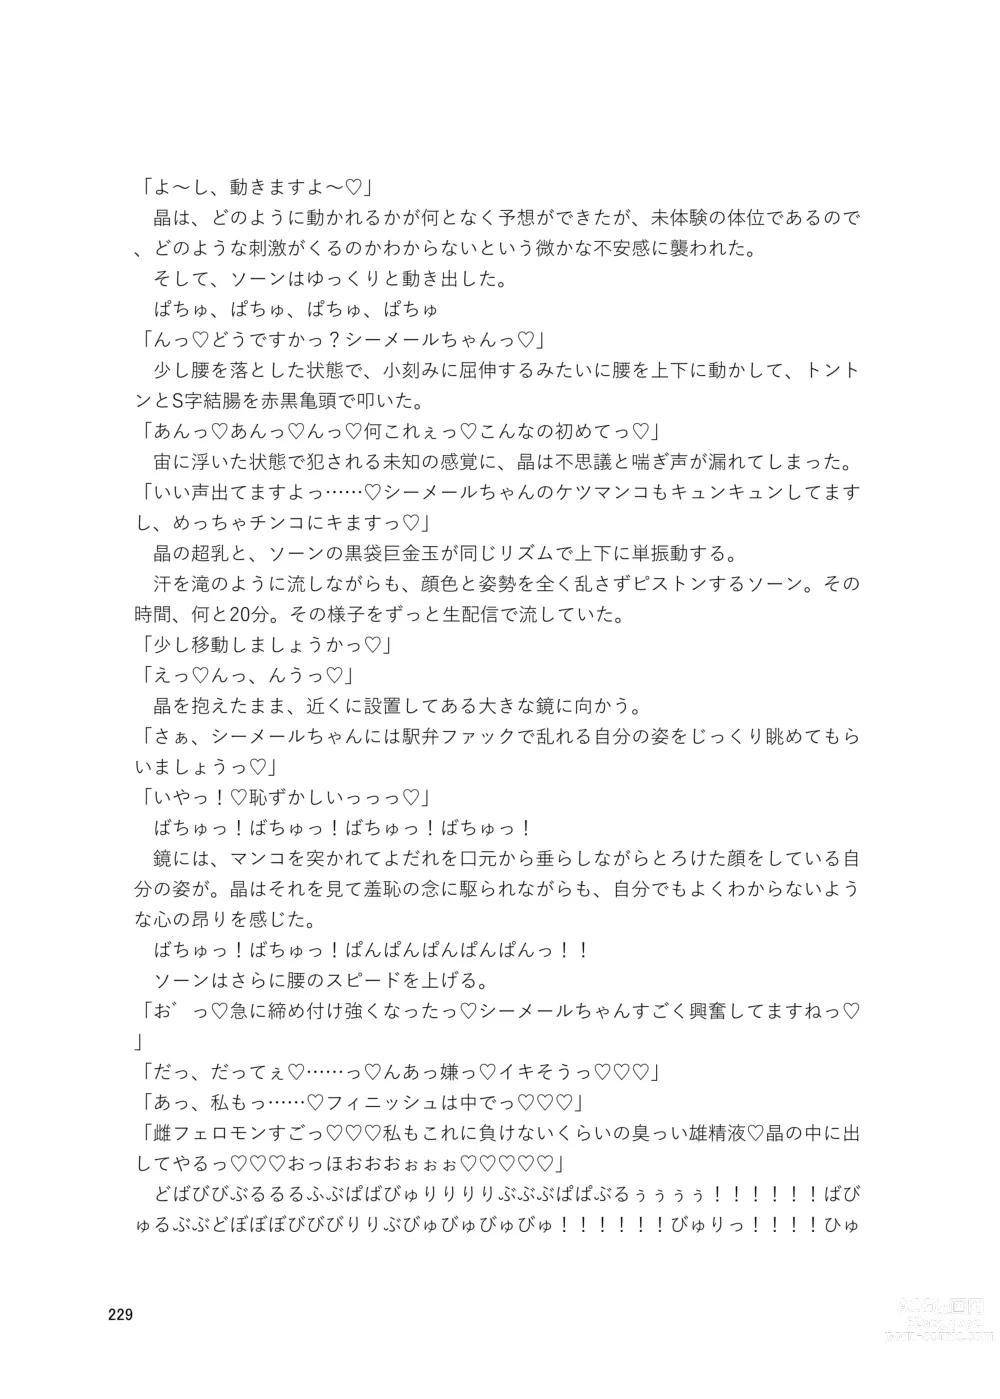 Page 229 of doujinshi Shemale & Mesu Danshi Goudoushi Cs HAVEN 3 Rod